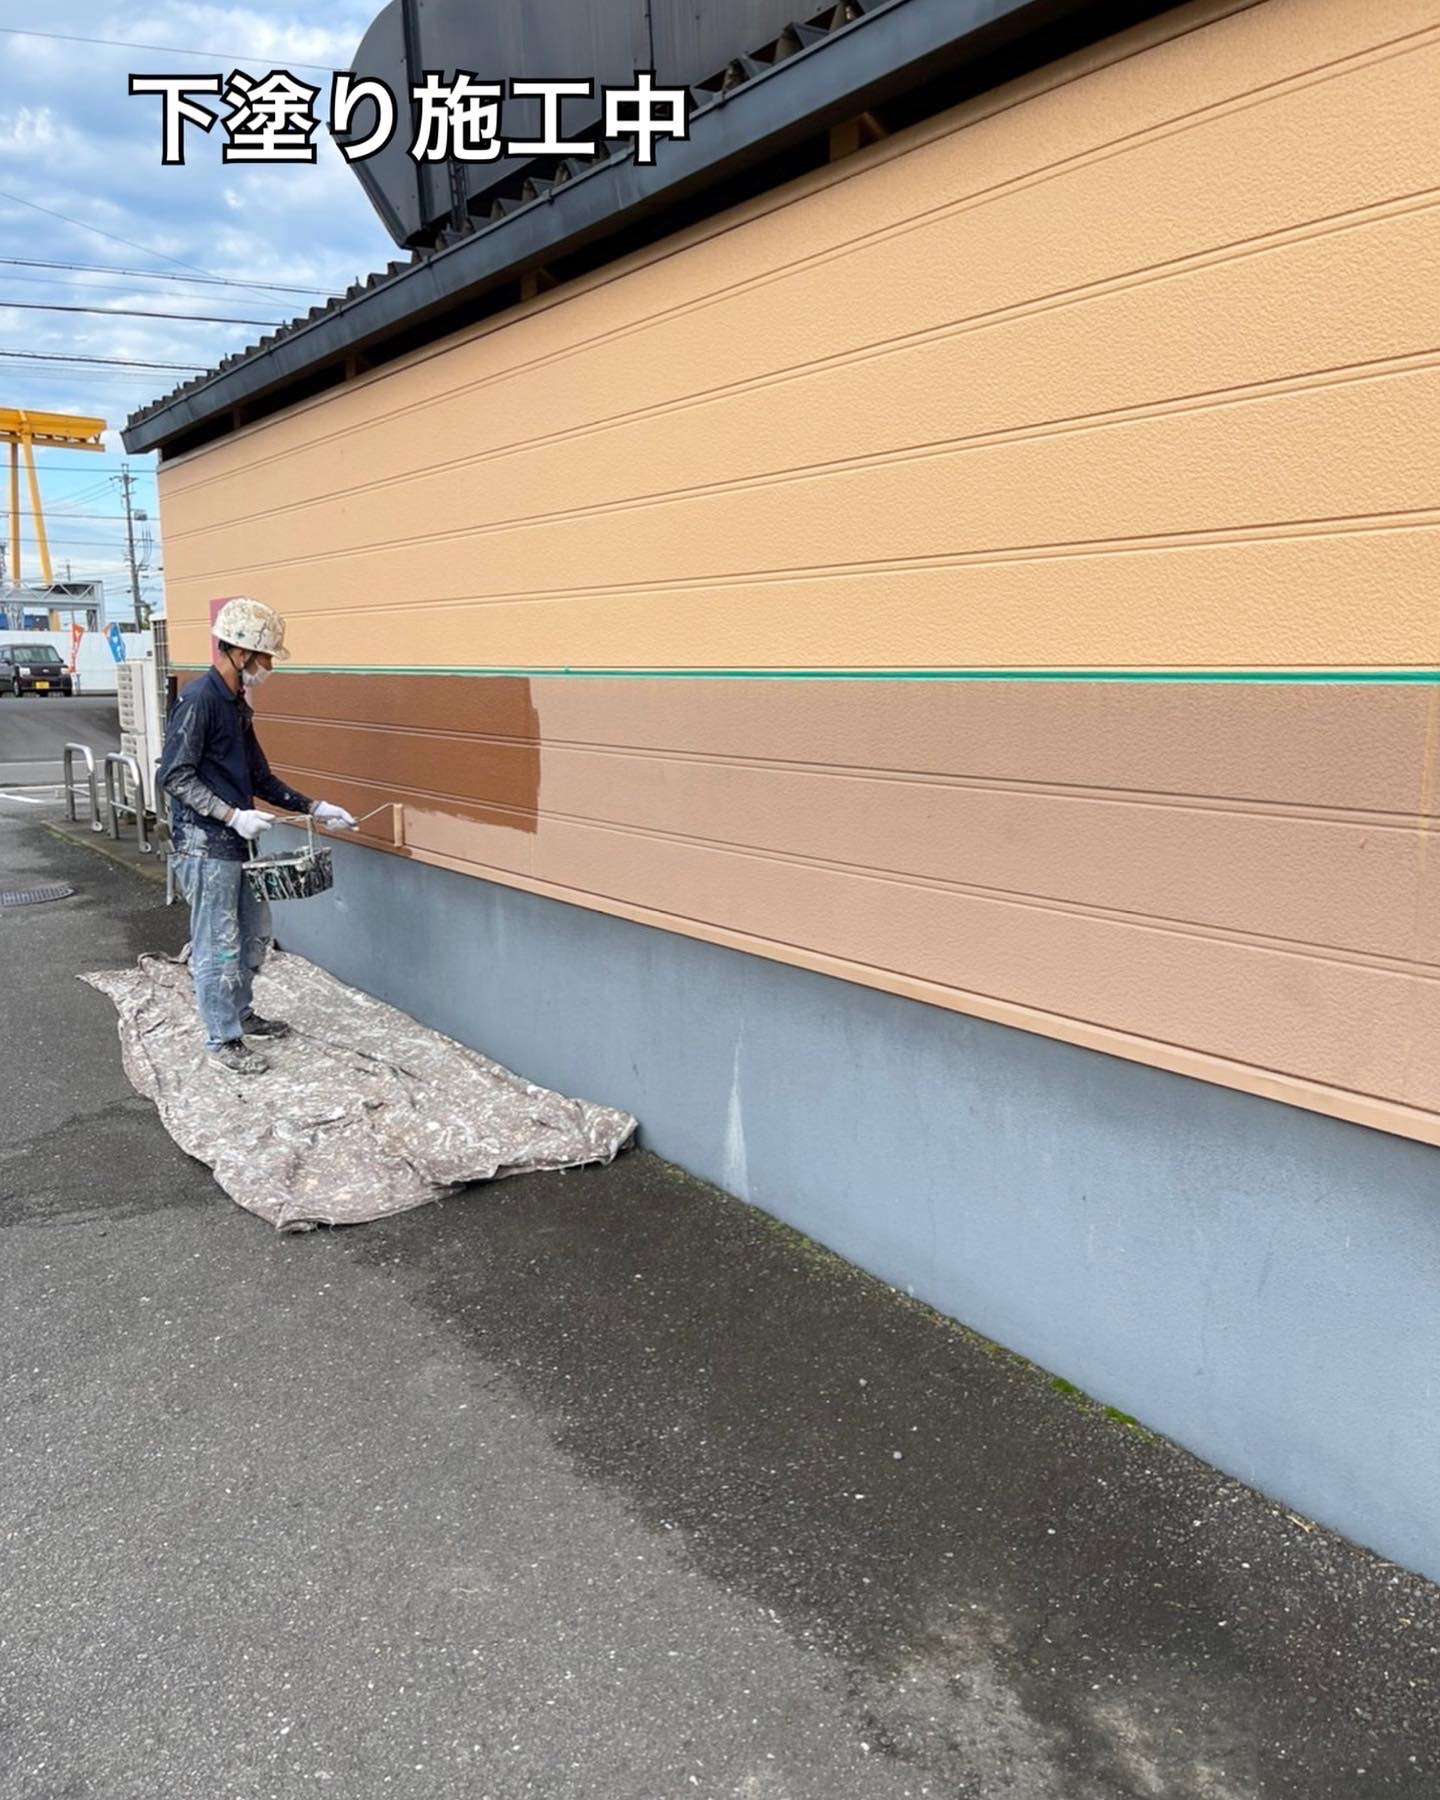 愛知県あま市ラーメン屋🍜様の塗装工事のご紹介をさせて頂きます✨東海地方・名古屋市で外壁塗装、屋根塗装・防水工事をお考えの方は是非弊社にお任せ下さい✨